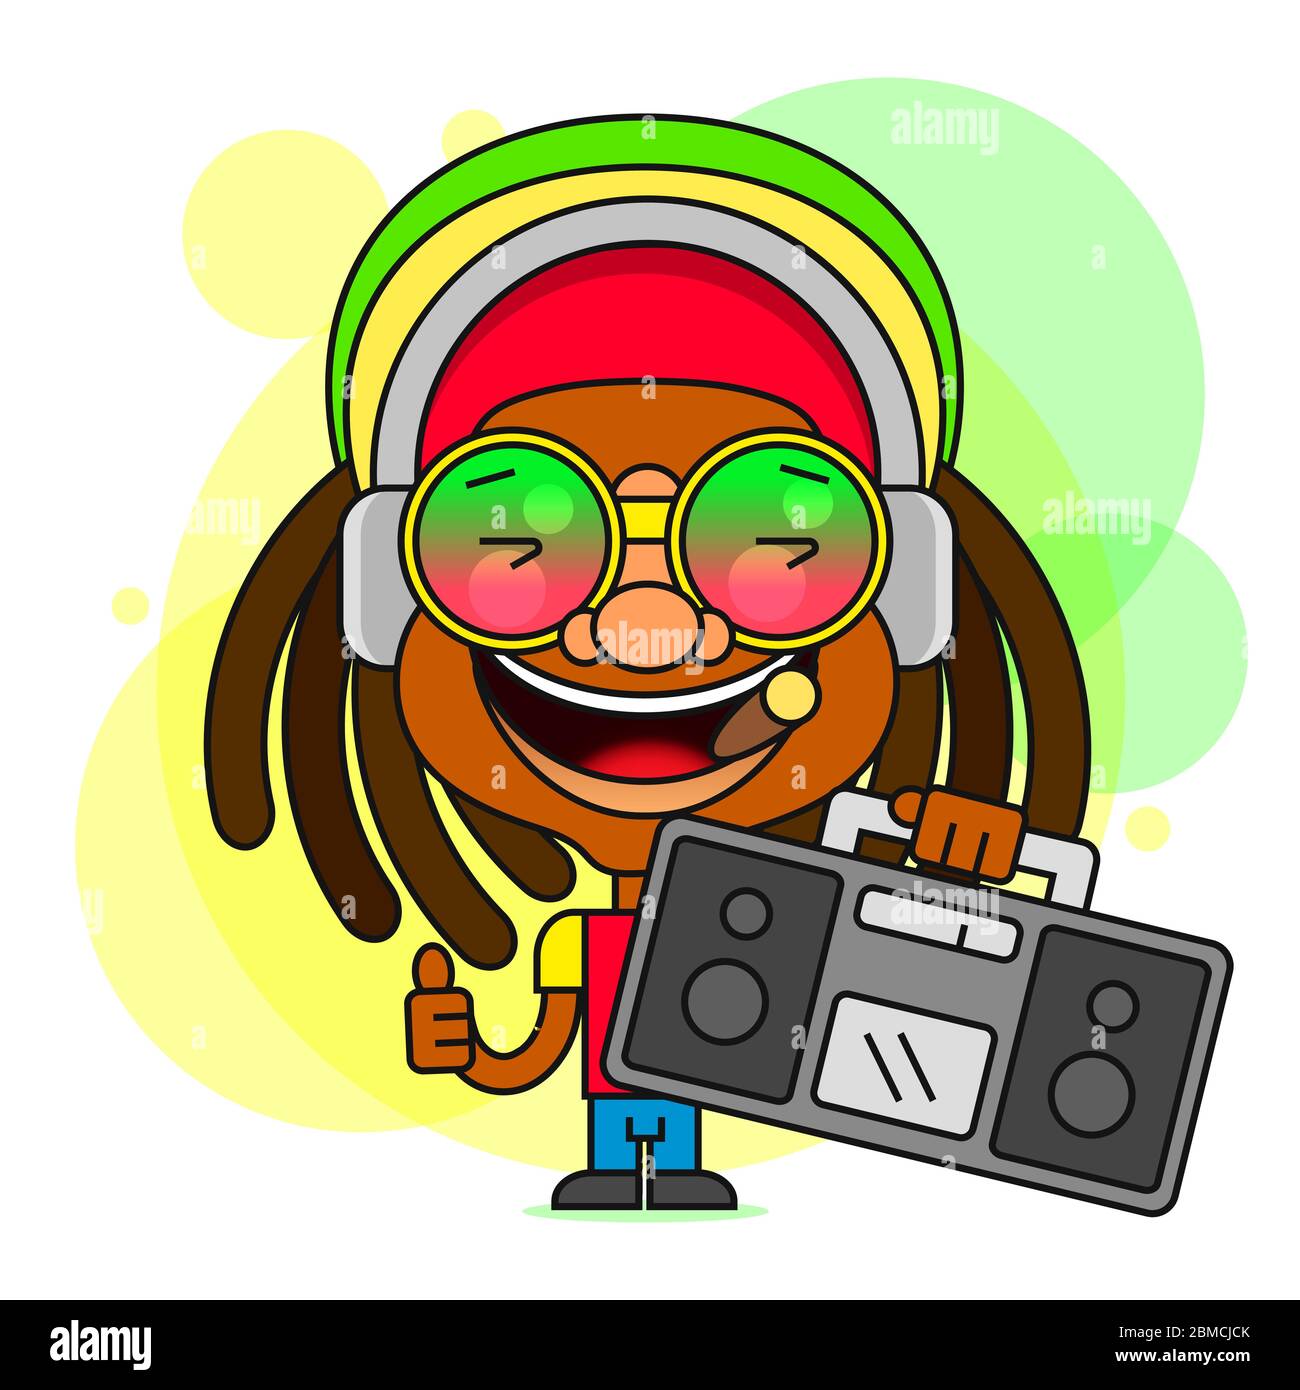 Mann mit Dreadlocks Frisur für Rastafarian und Reggae Thema Vektor Illustration geeignet für Grußkarten, Poster oder T-Shirt Druck. Stock Vektor